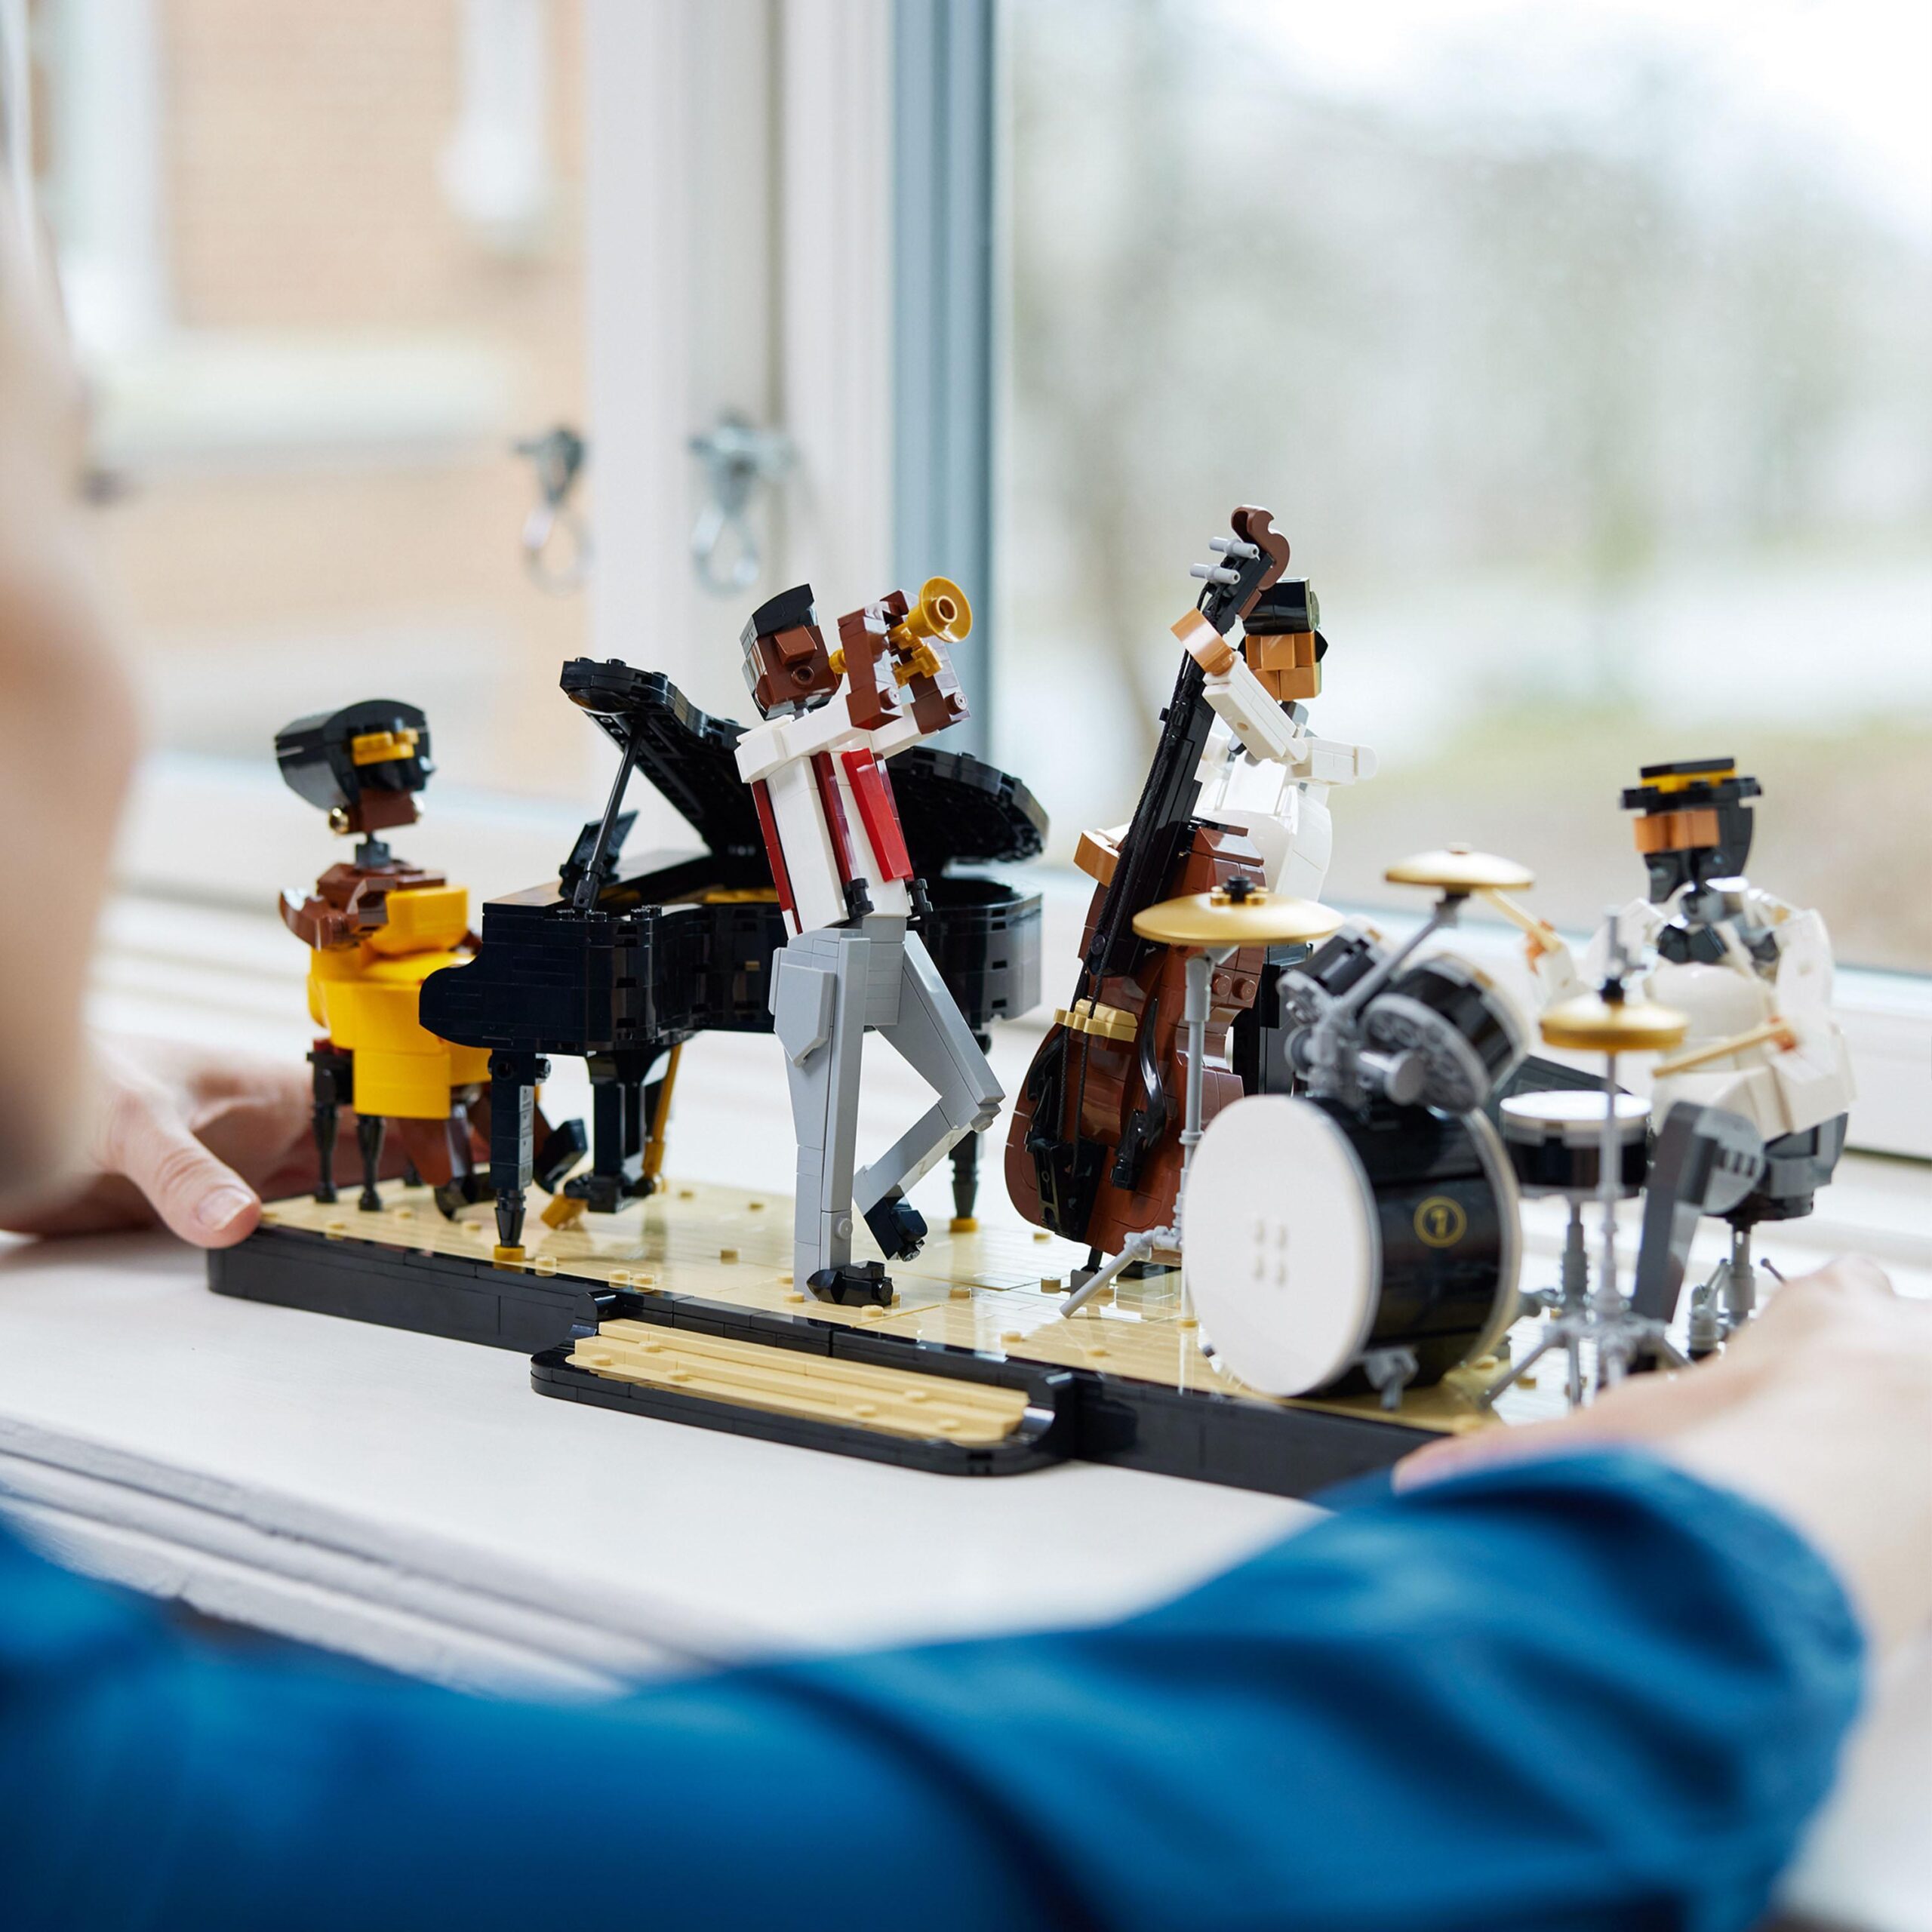 Lego ideas 21334 quartetto jazz, idee regalo per adulti amanti della musica con musicisti e strumenti: pianoforte e batteria - LEGO IDEAS